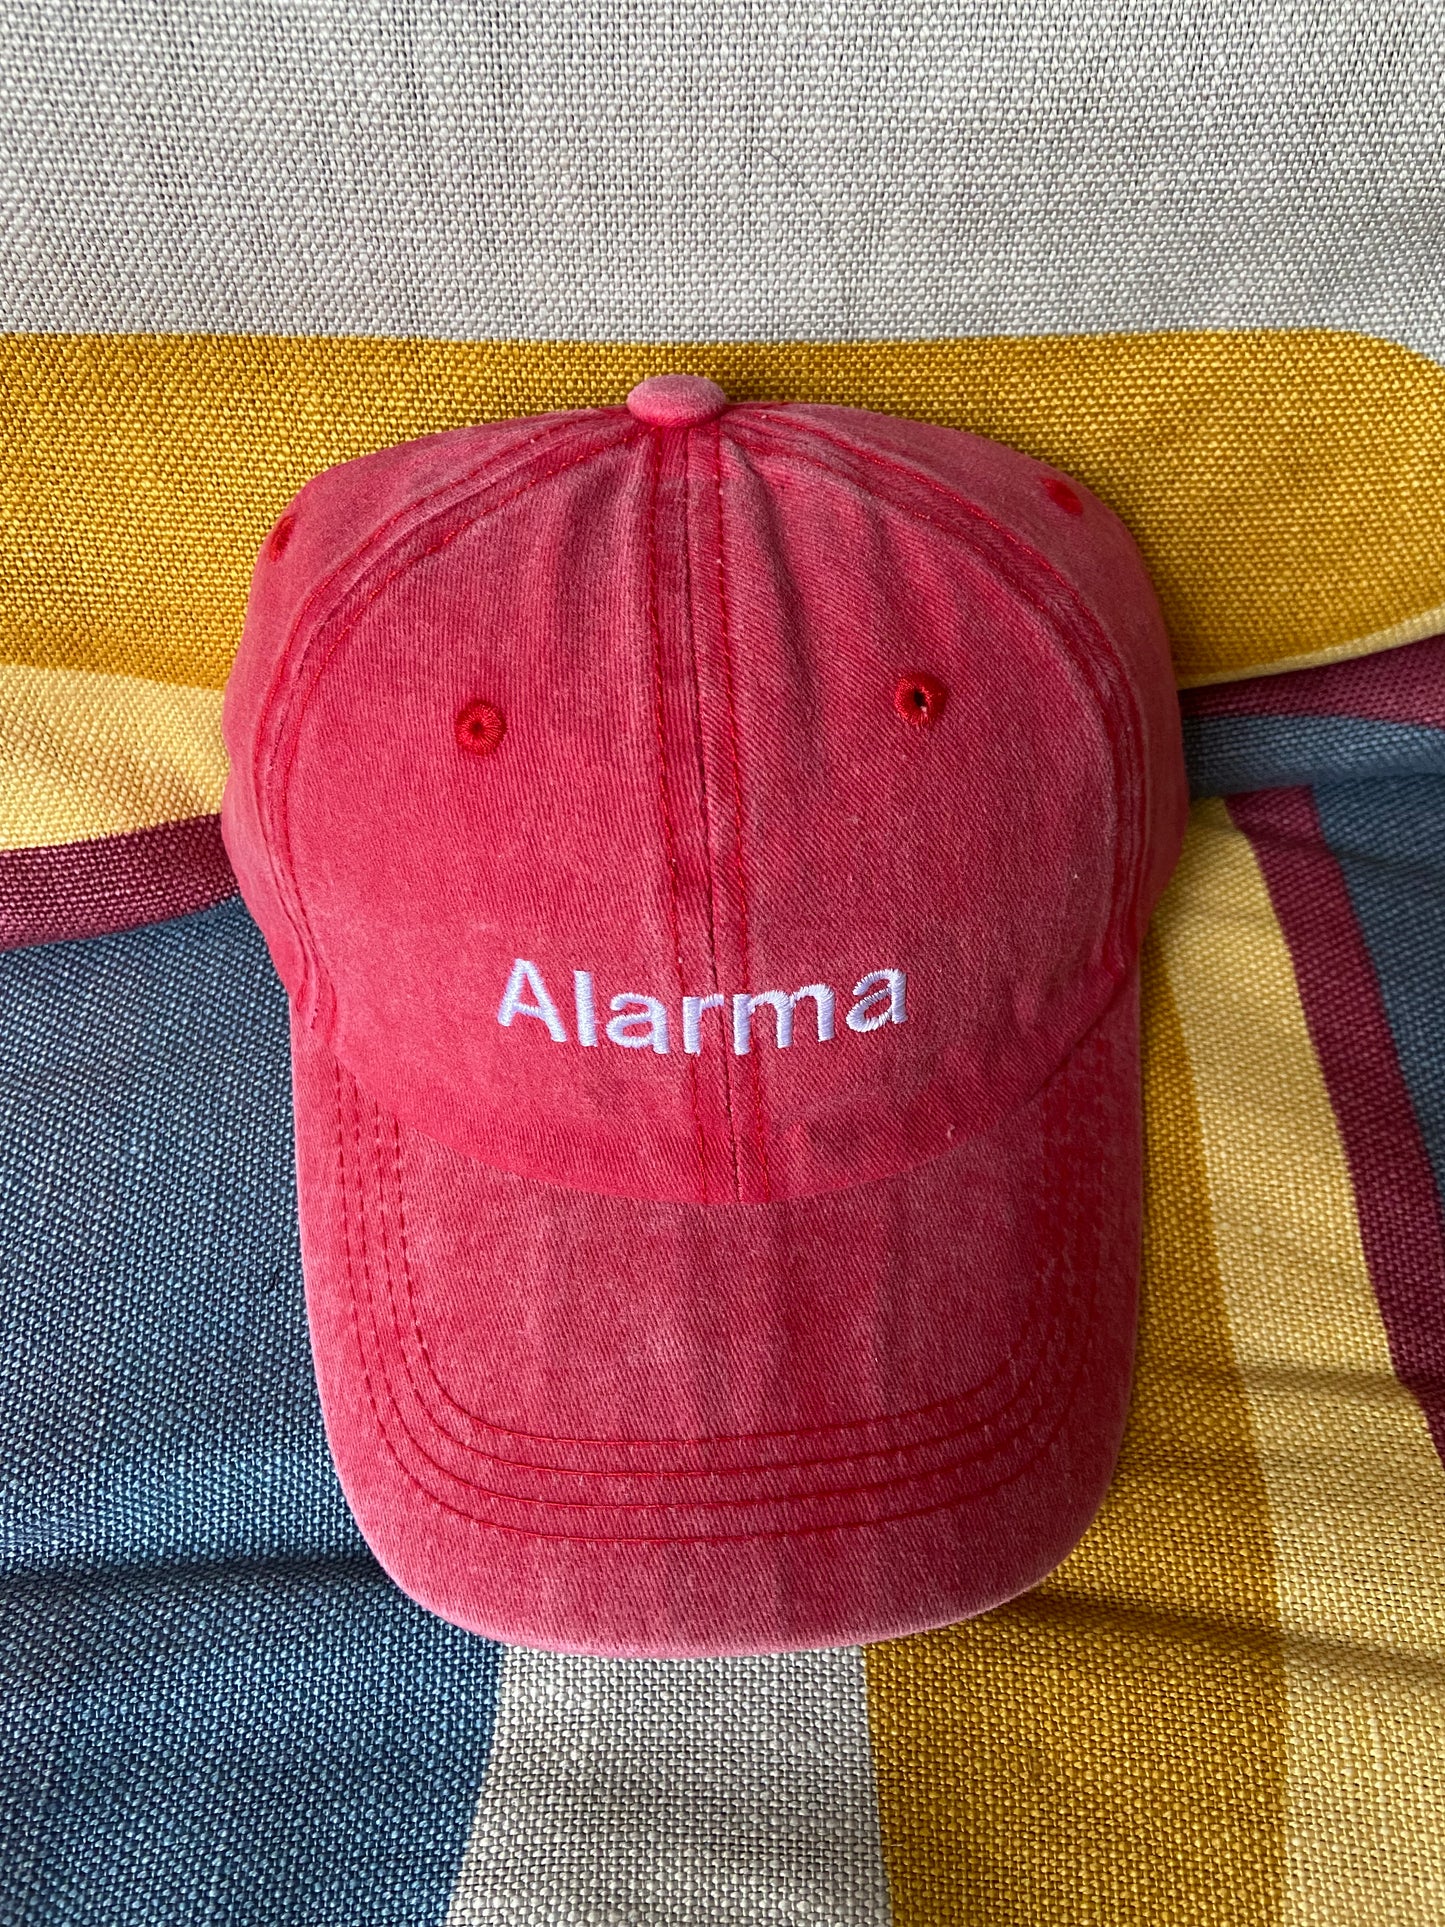 Red Alarma cap